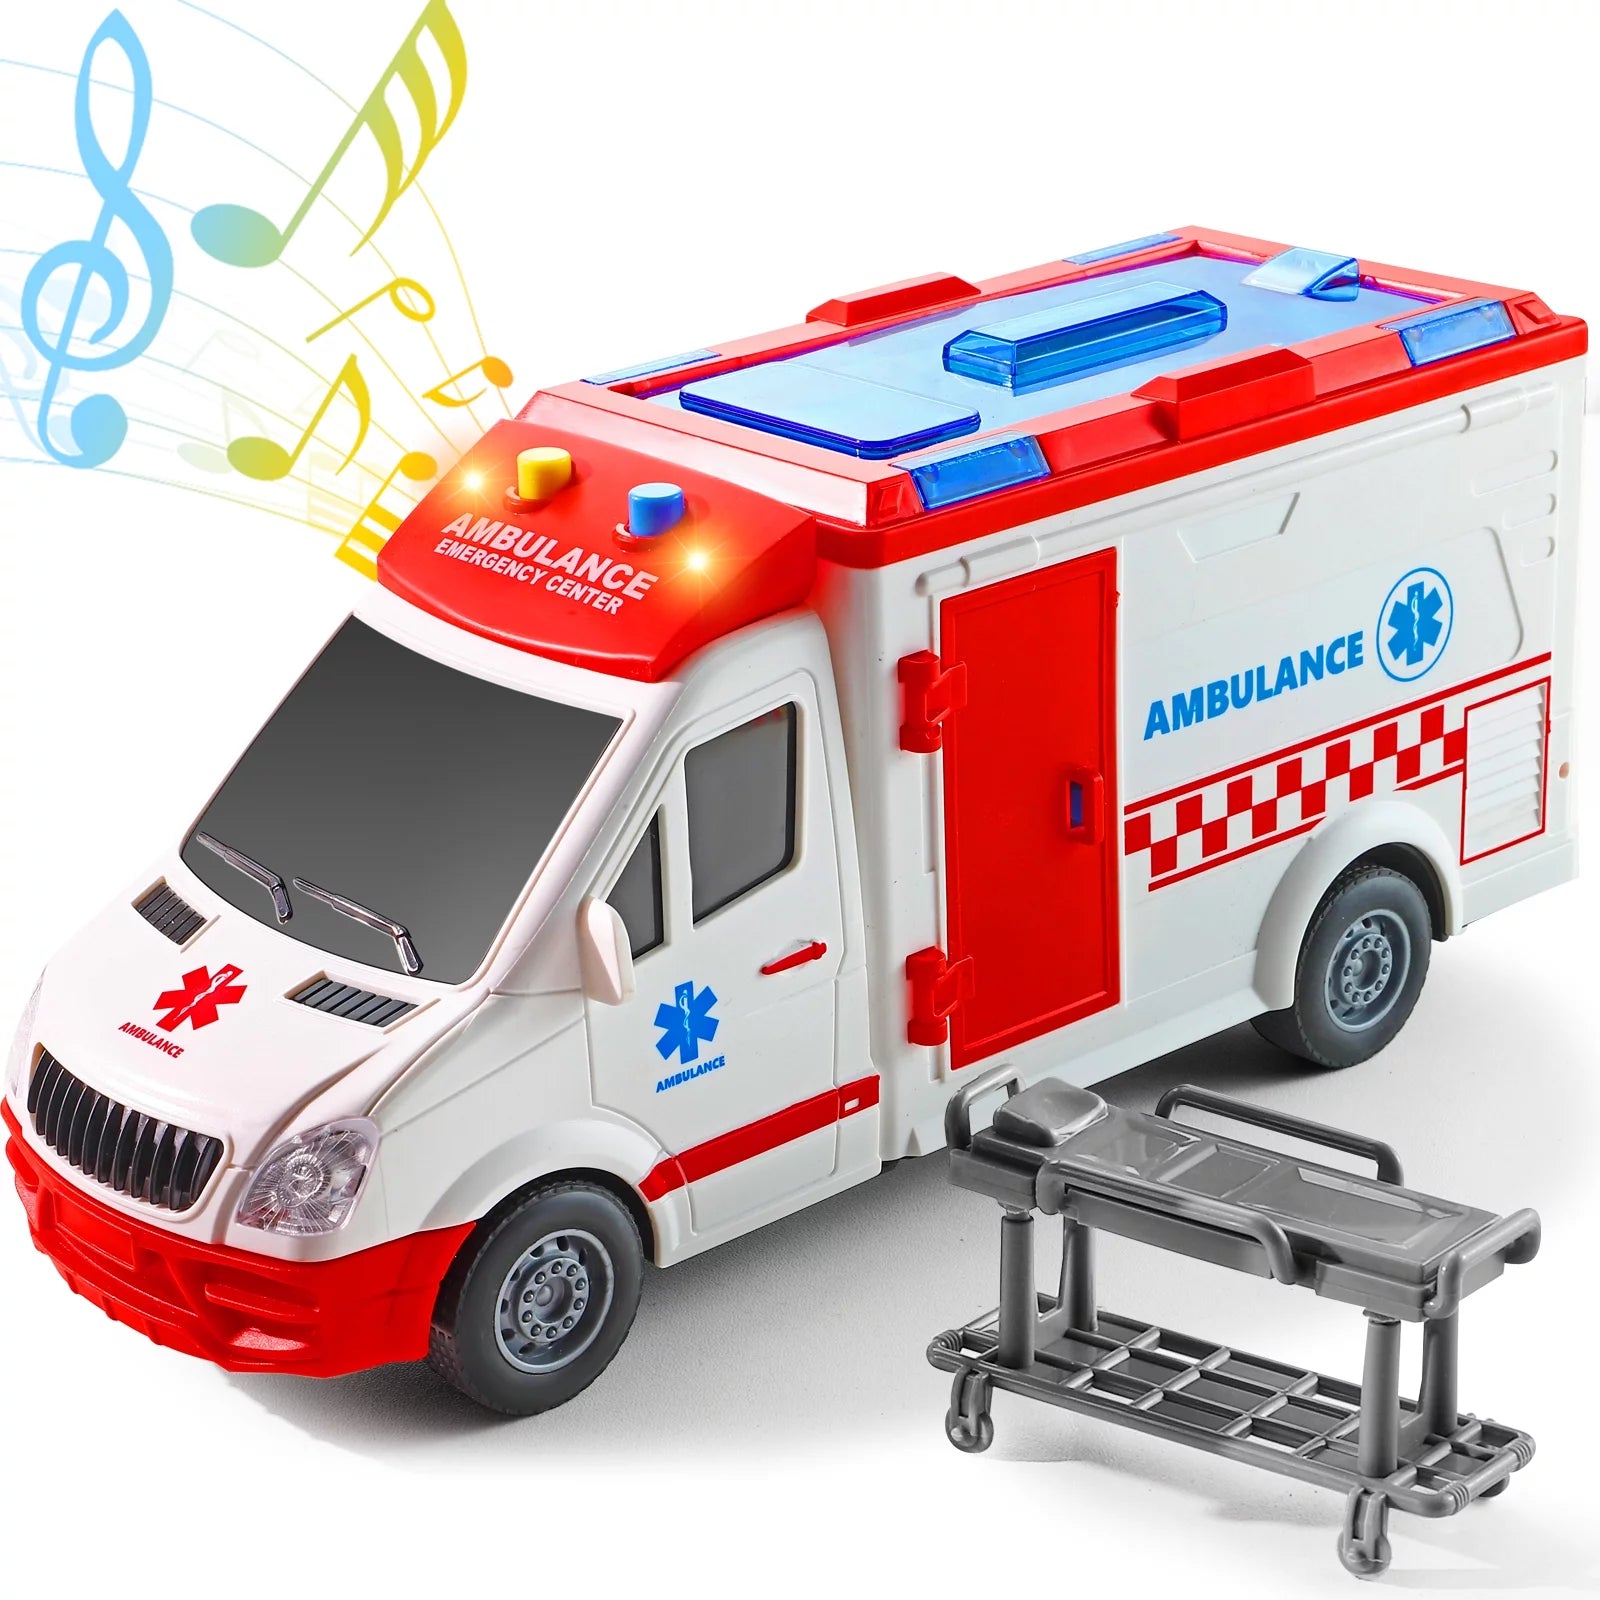 لعبة شاحنة إسعاف للأطفال بأضواء وصفارة إنذار، لعبة إنقاذ بمقياس 1/16 تعمل بالاحتكاك